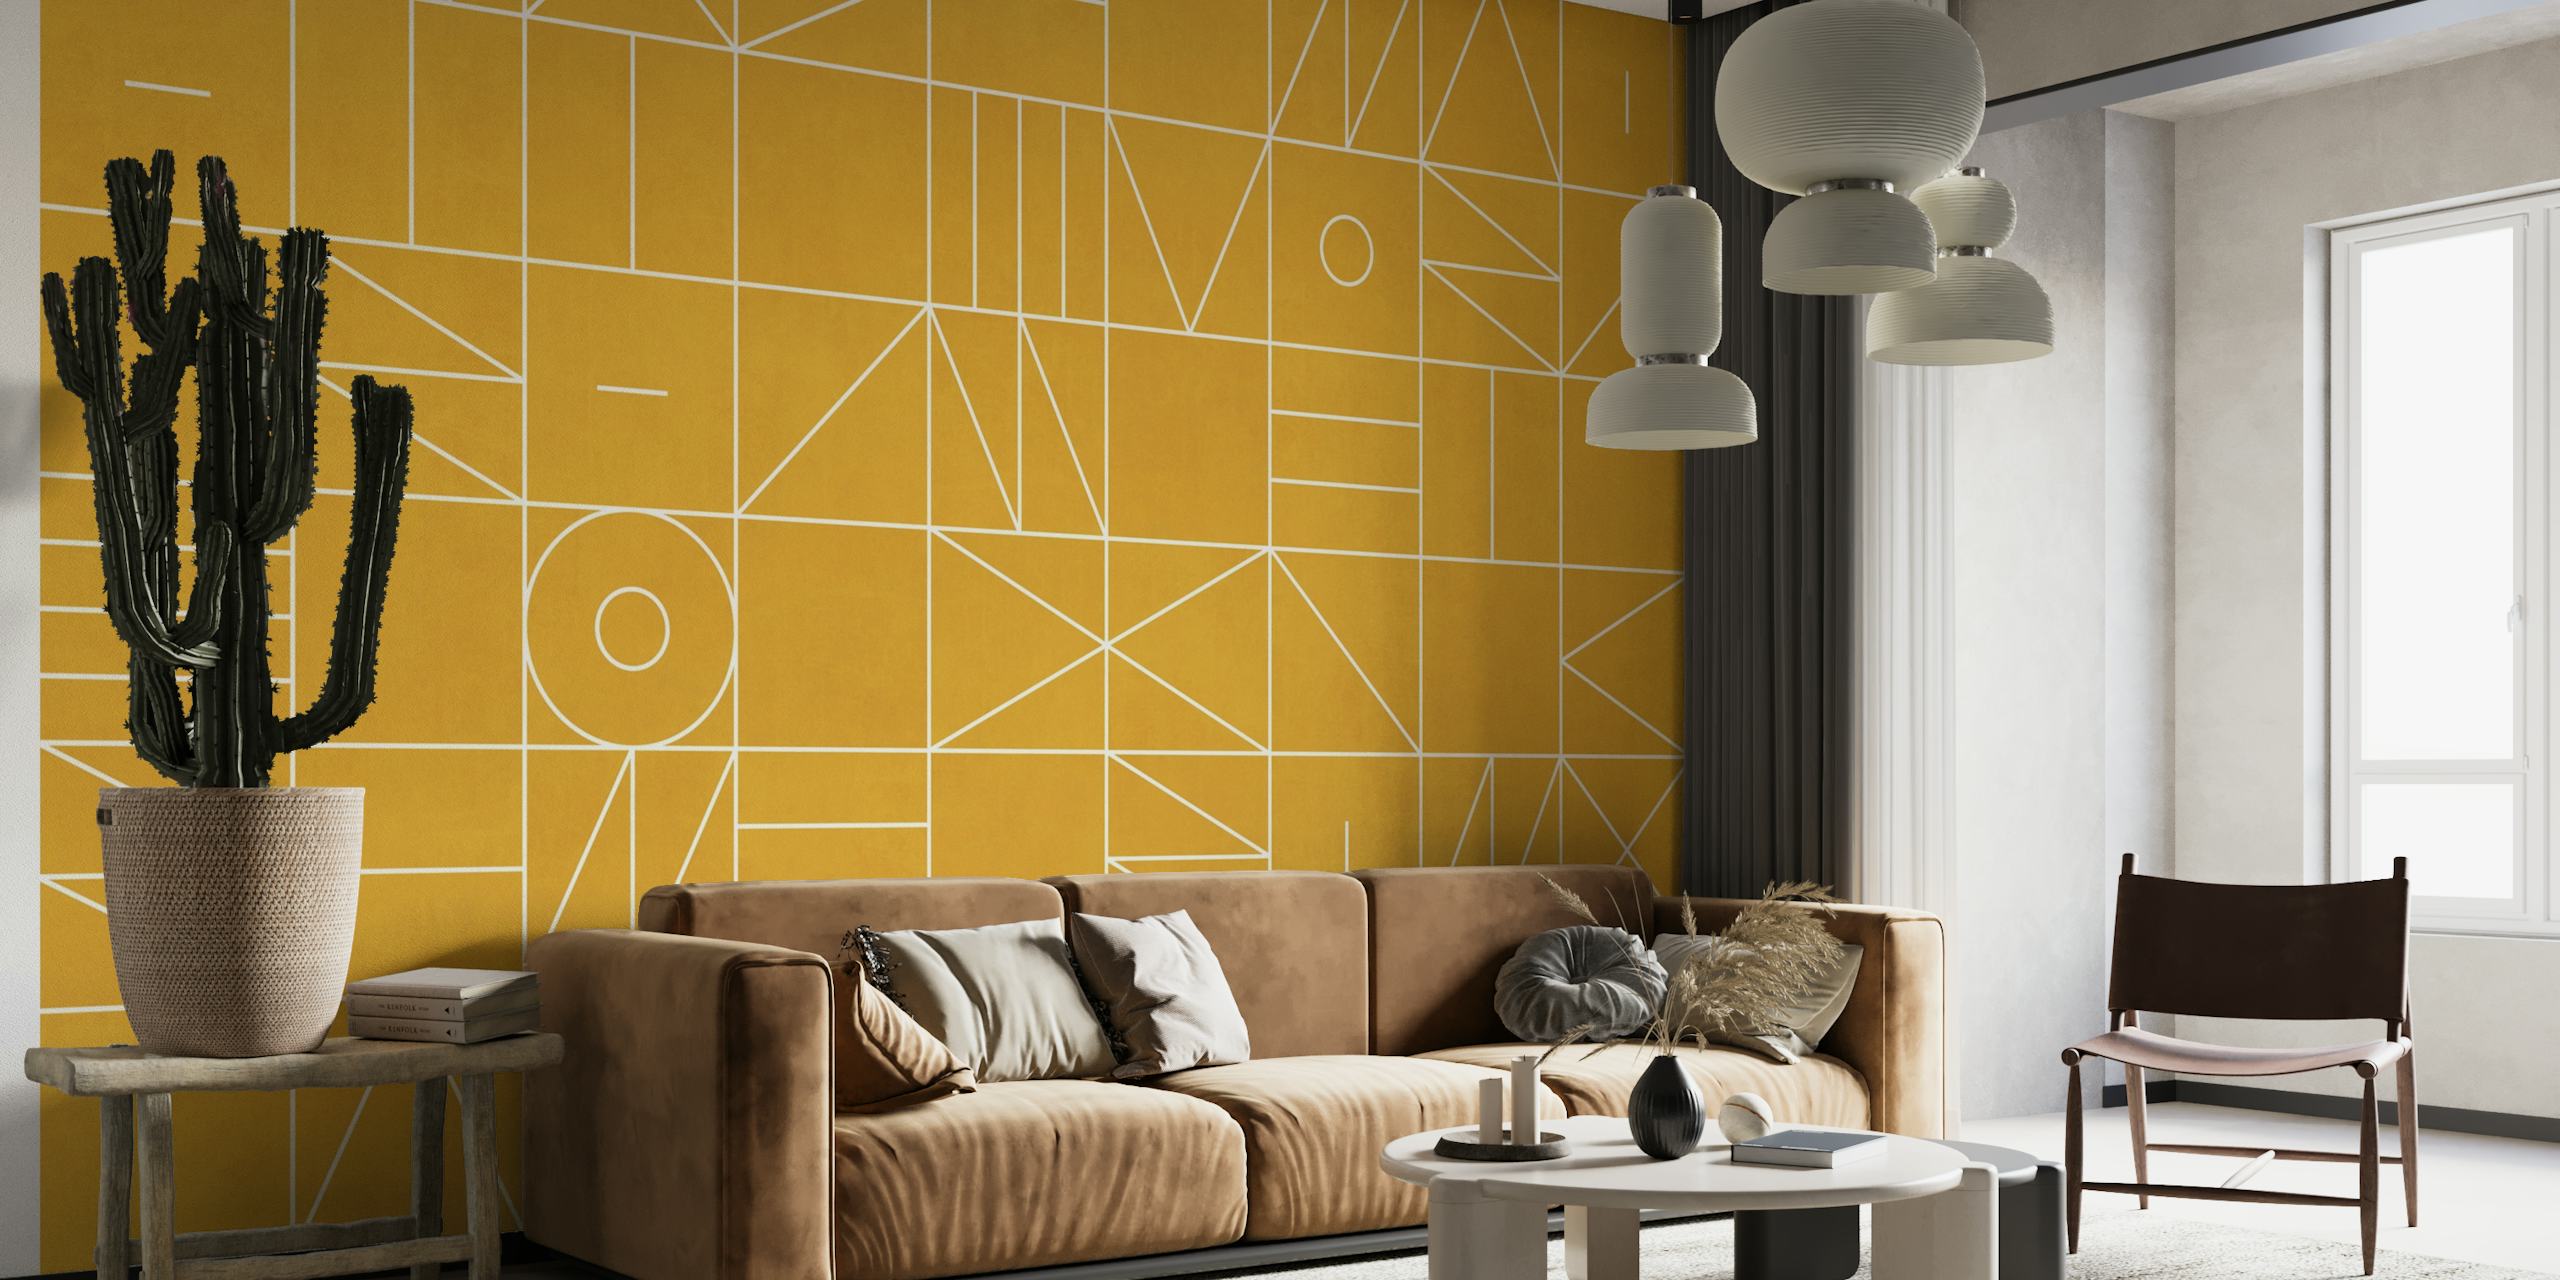 Geometrinen kuviollinen seinämaalaus kultaisessa sävyssä abstrakteilla muodoilla ja viivoilla